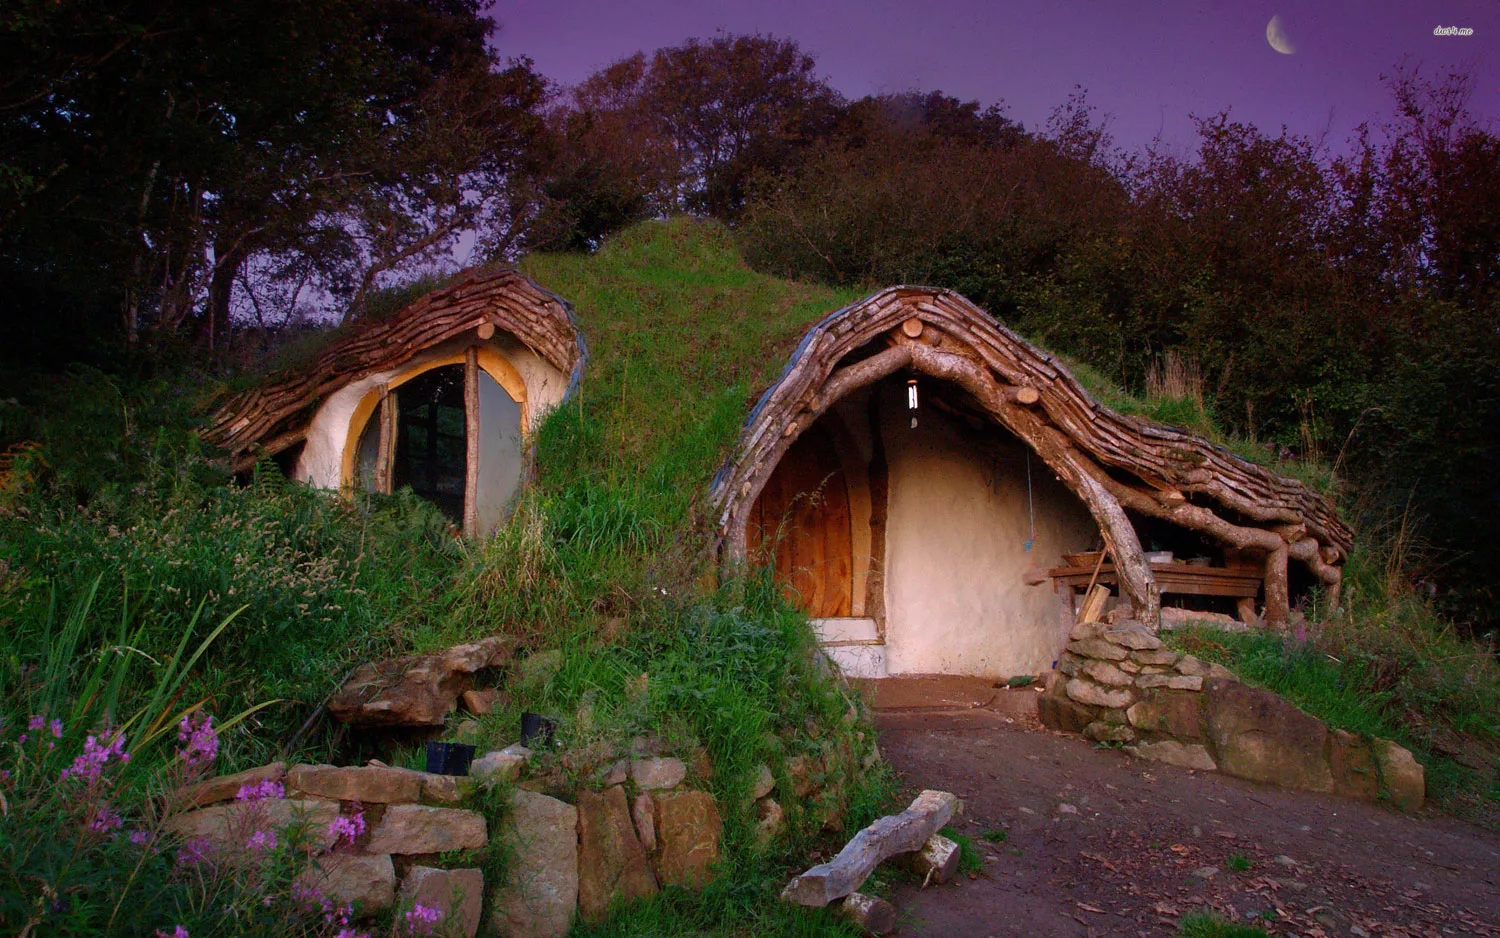 Foto della casa in stile Hobbit realizzata in Galles